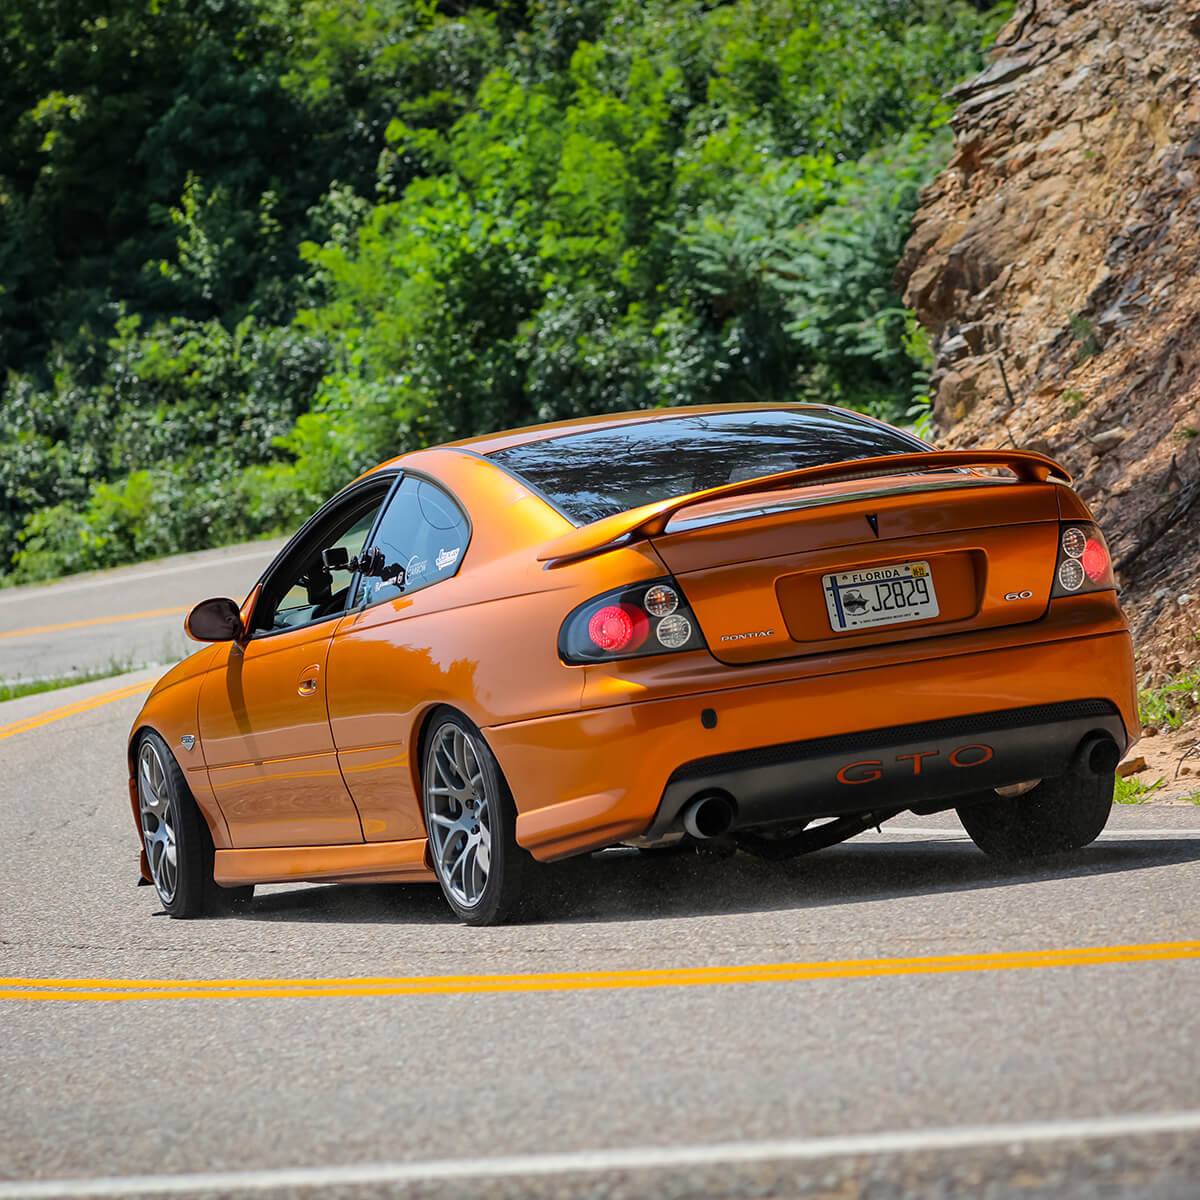 Orange metallic Pontiac GTO 2006